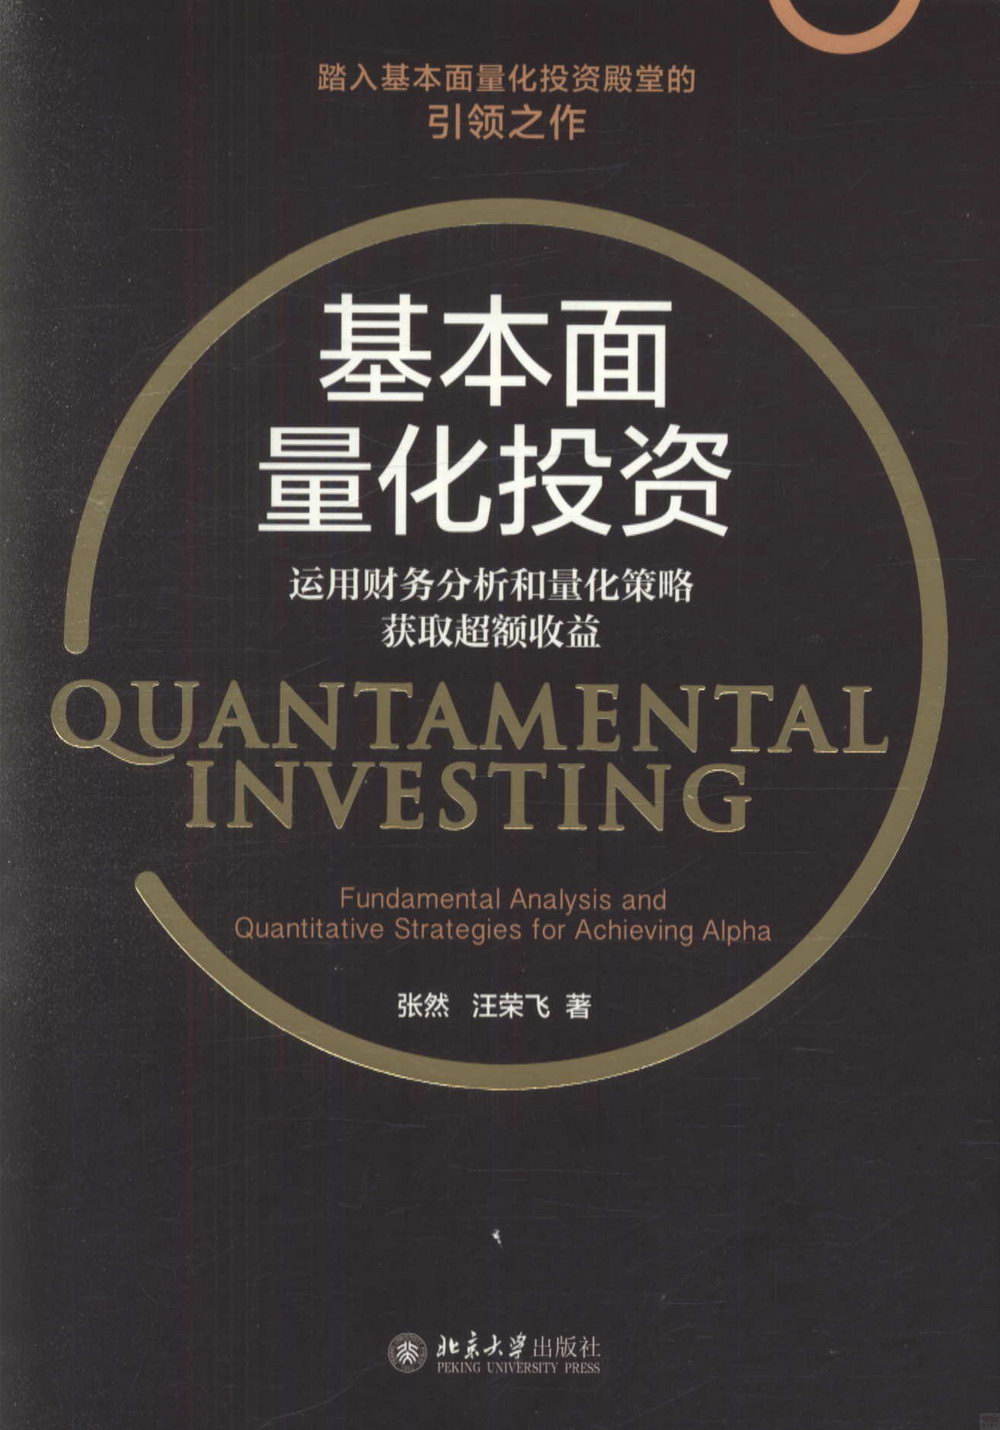 基本面量化投資：運用財務分析和量化策略獲取超額收益